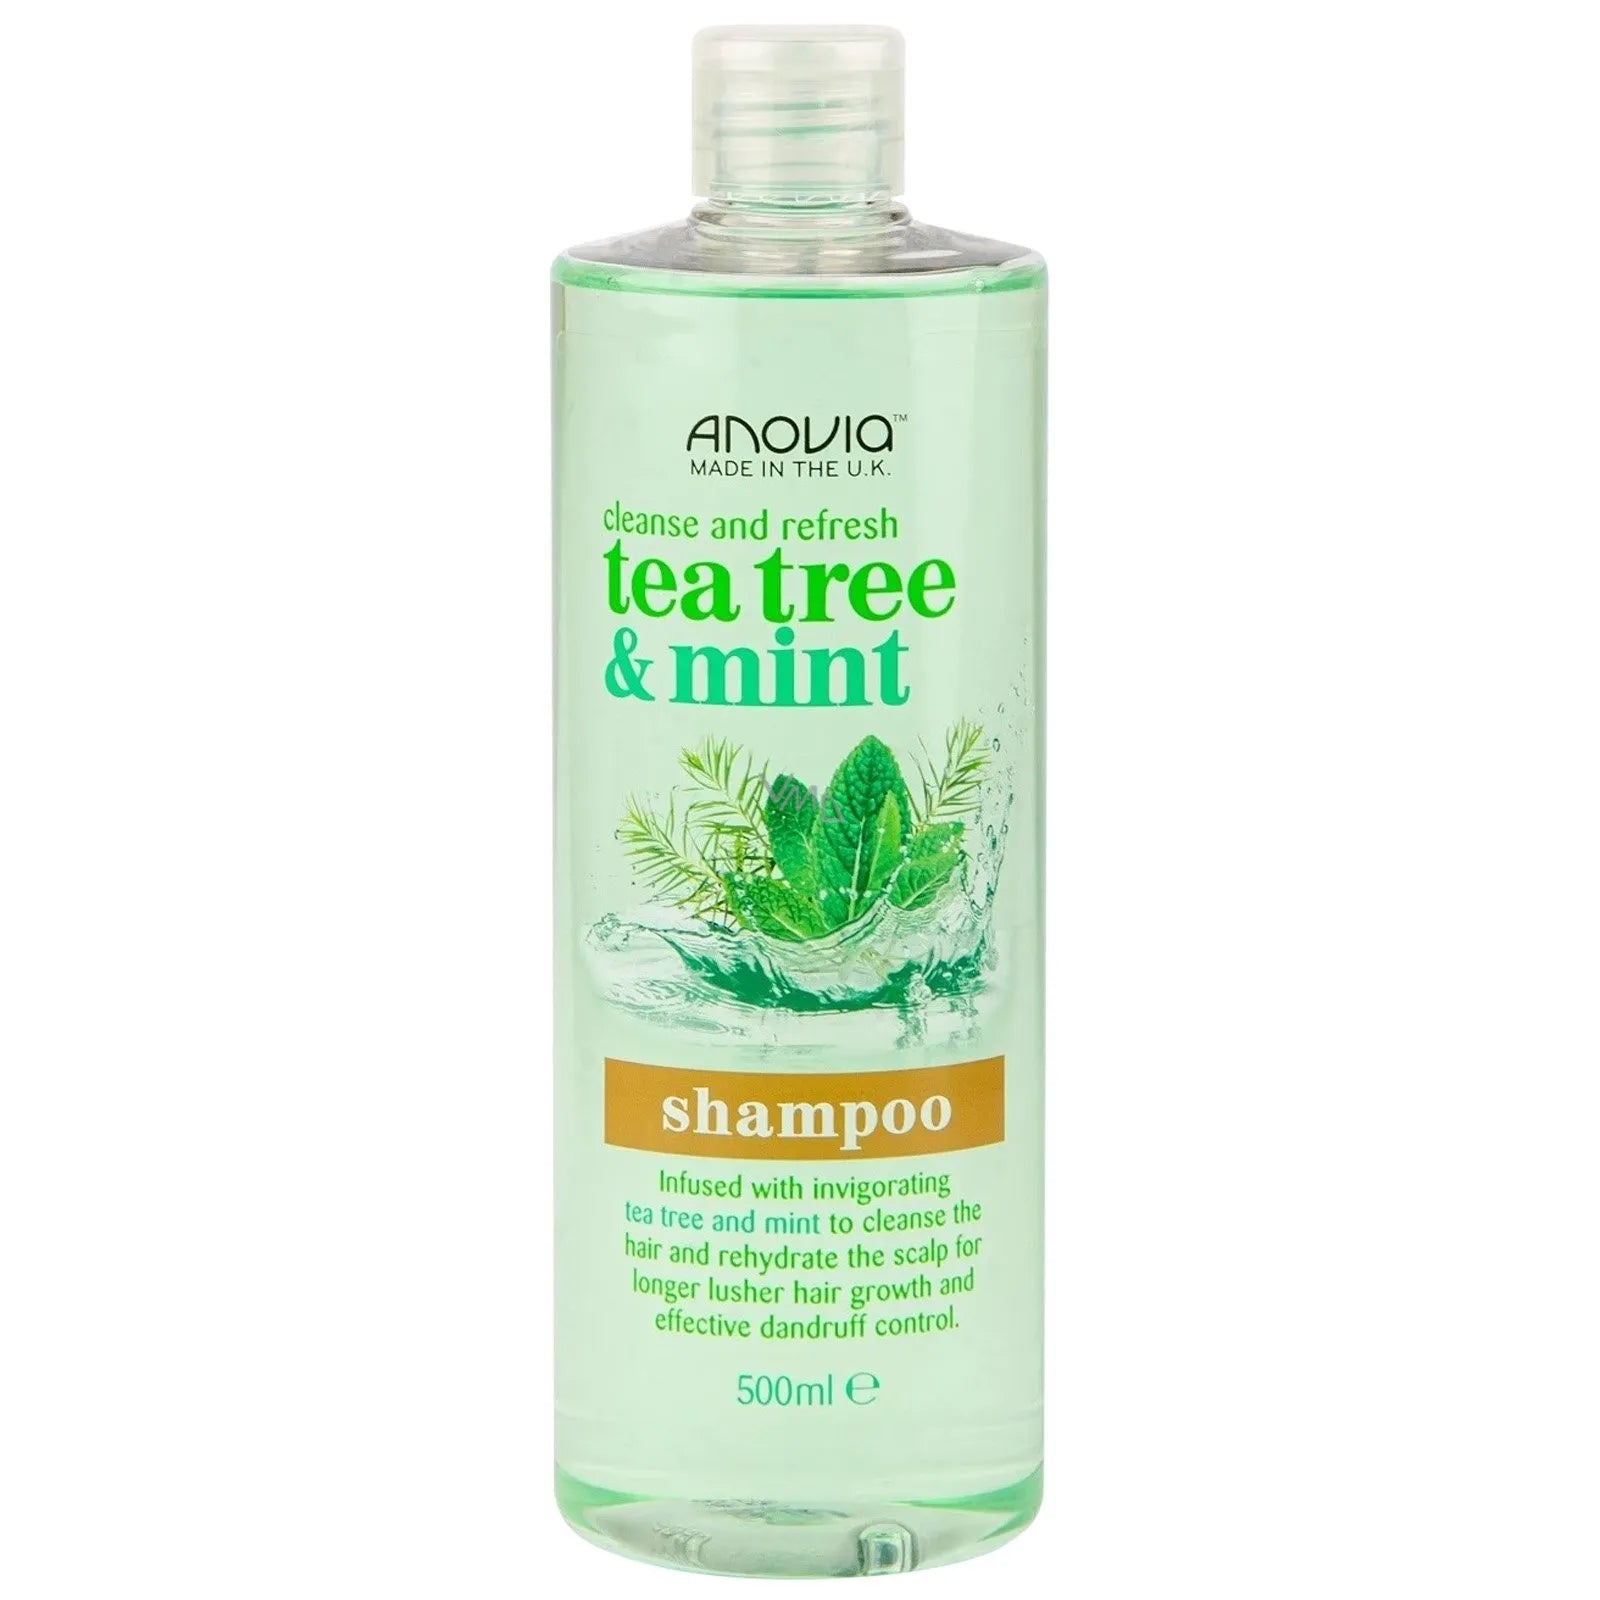 ANOVIA Cleanse and Fresh Tea Tree & Mint Shampoo